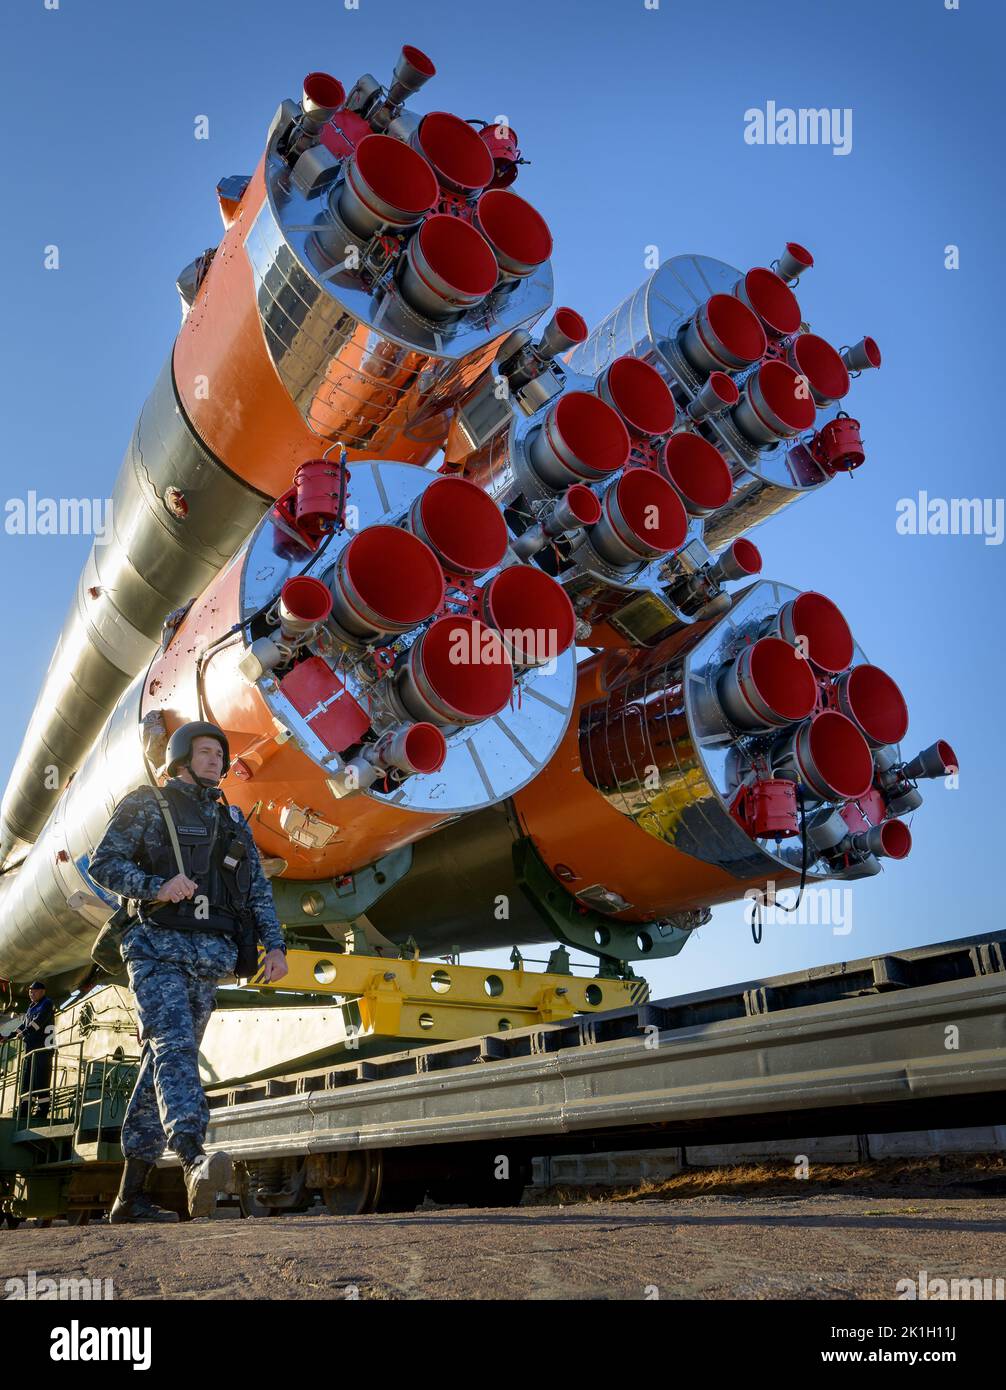 Baikonur , Kazakistan. 18 Settembre 2022. Un soldato russo è in guardia, mentre la navicella spaziale Soyuz MS-22 e il razzo booster vengono lanciati in treno per lanciare il pad 31 del Cosmodromo di Baikonur, 18 settembre 2022 a Baikonur, Kazakistan. Spedizione Stazione spaziale Internazionale 68 membri dell'equipaggio l'astronauta Frank Rubio della NASA, e i cosmonauti Sergey Prokopyev e Dmitri Petelin del Roscosmos saranno lanciati il 21st settembre al laboratorio orbitante. Credit: Bill Ingalls/NASA/Alamy Live News Foto Stock